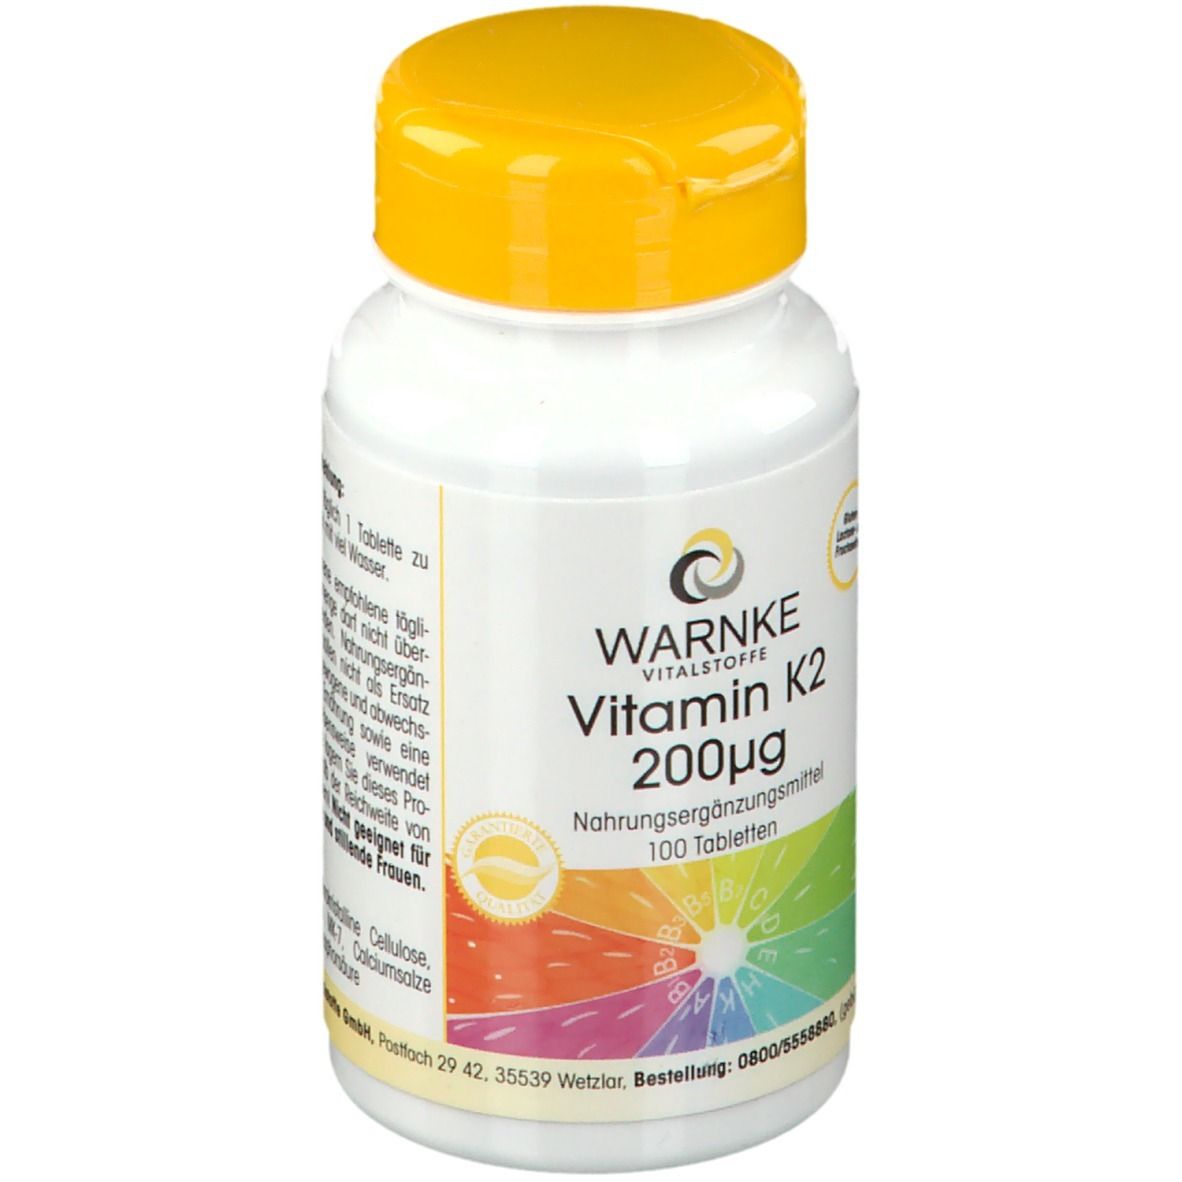  WARNKE Vitamin K2 200 µg